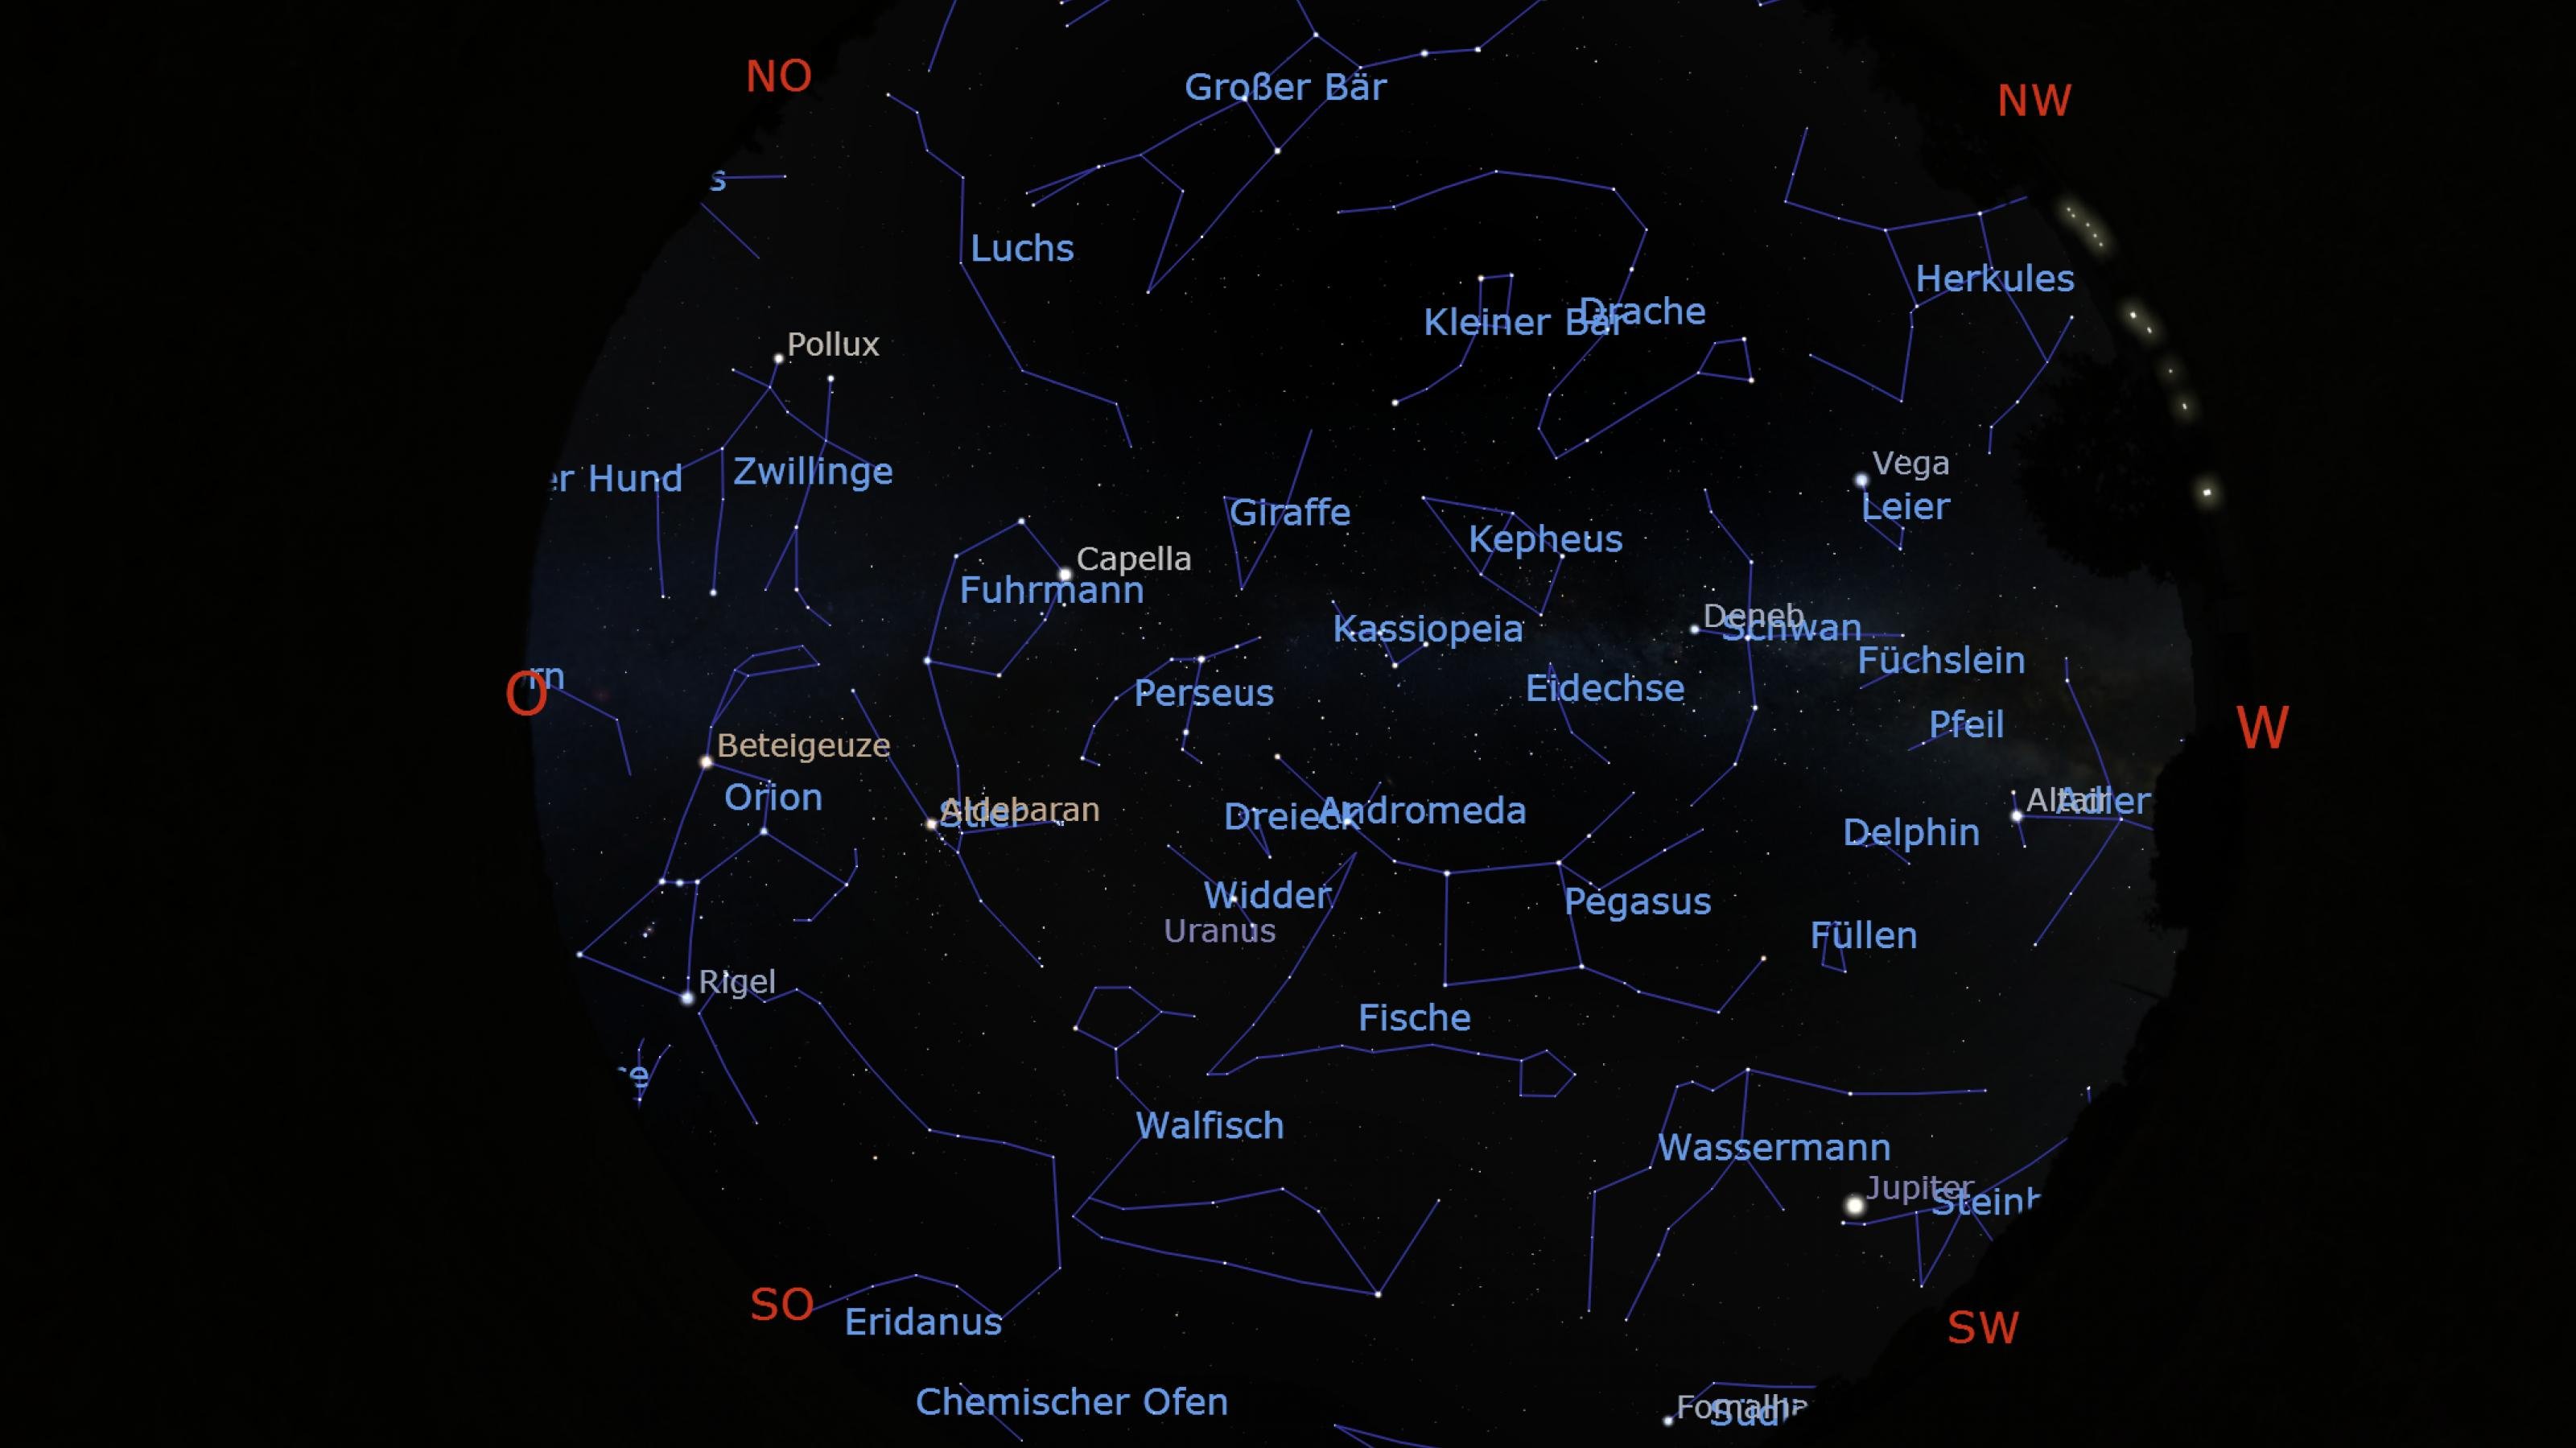 Himmelskarte mit der Position von Sternen und Planeten für Anfang November 2021 gegen 22:00 Uhr (MEZ) für den Standort Frankfurt am Main.